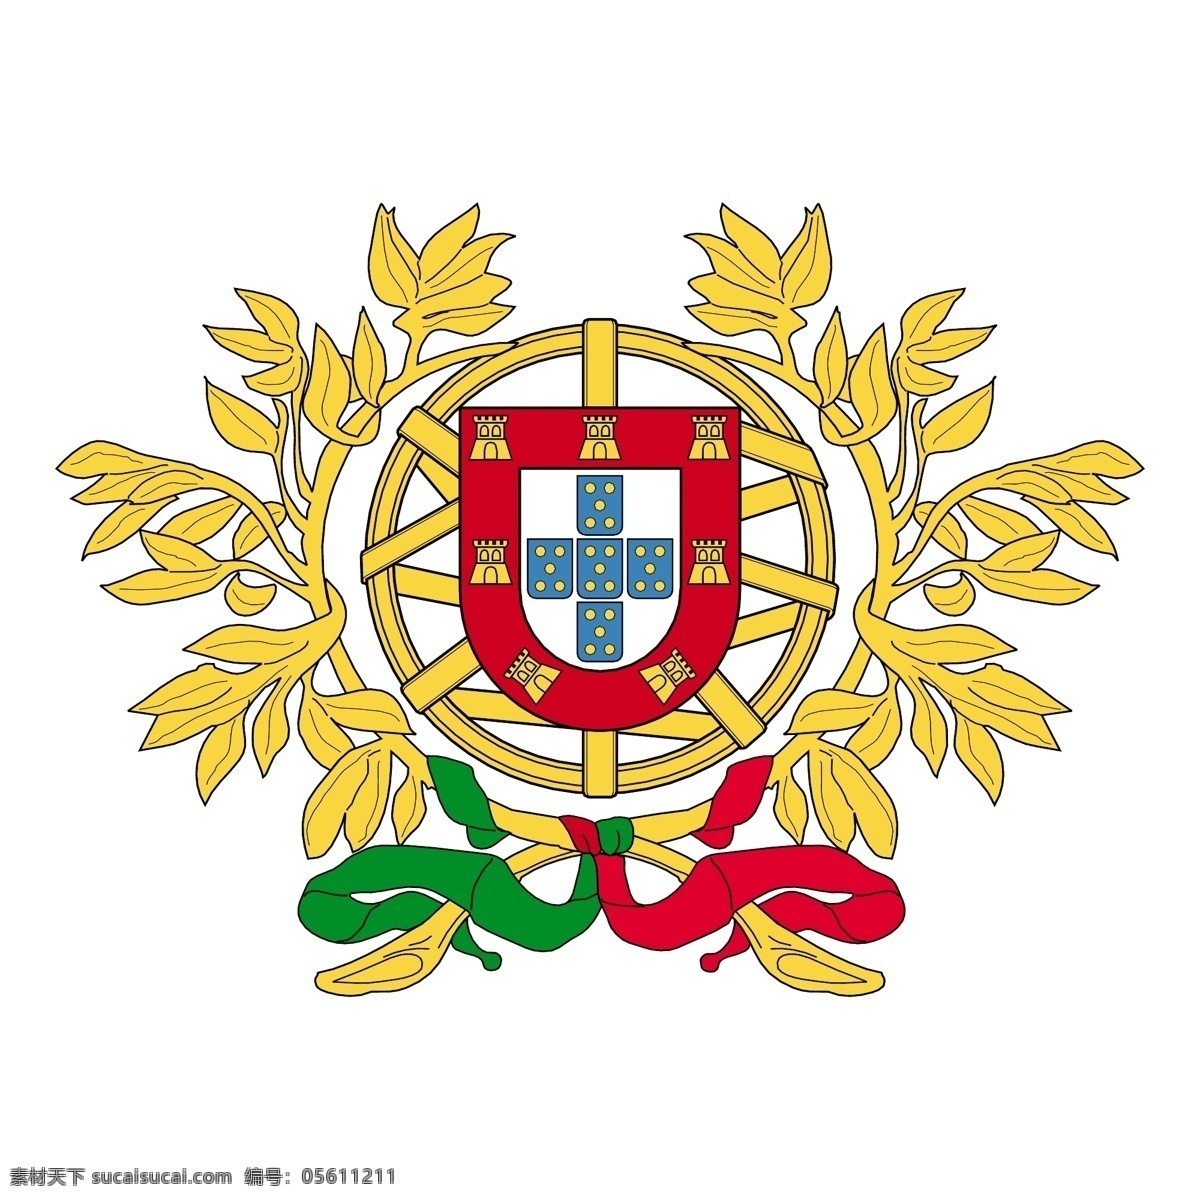 葡萄牙2 矢量艺术 葡萄牙 国旗 矢量 埃斯库多 免费 艺术 标志 夹 欧洲杯 2004 欧元 自由 赛车葡萄牙 向量 矢量图 建筑家居